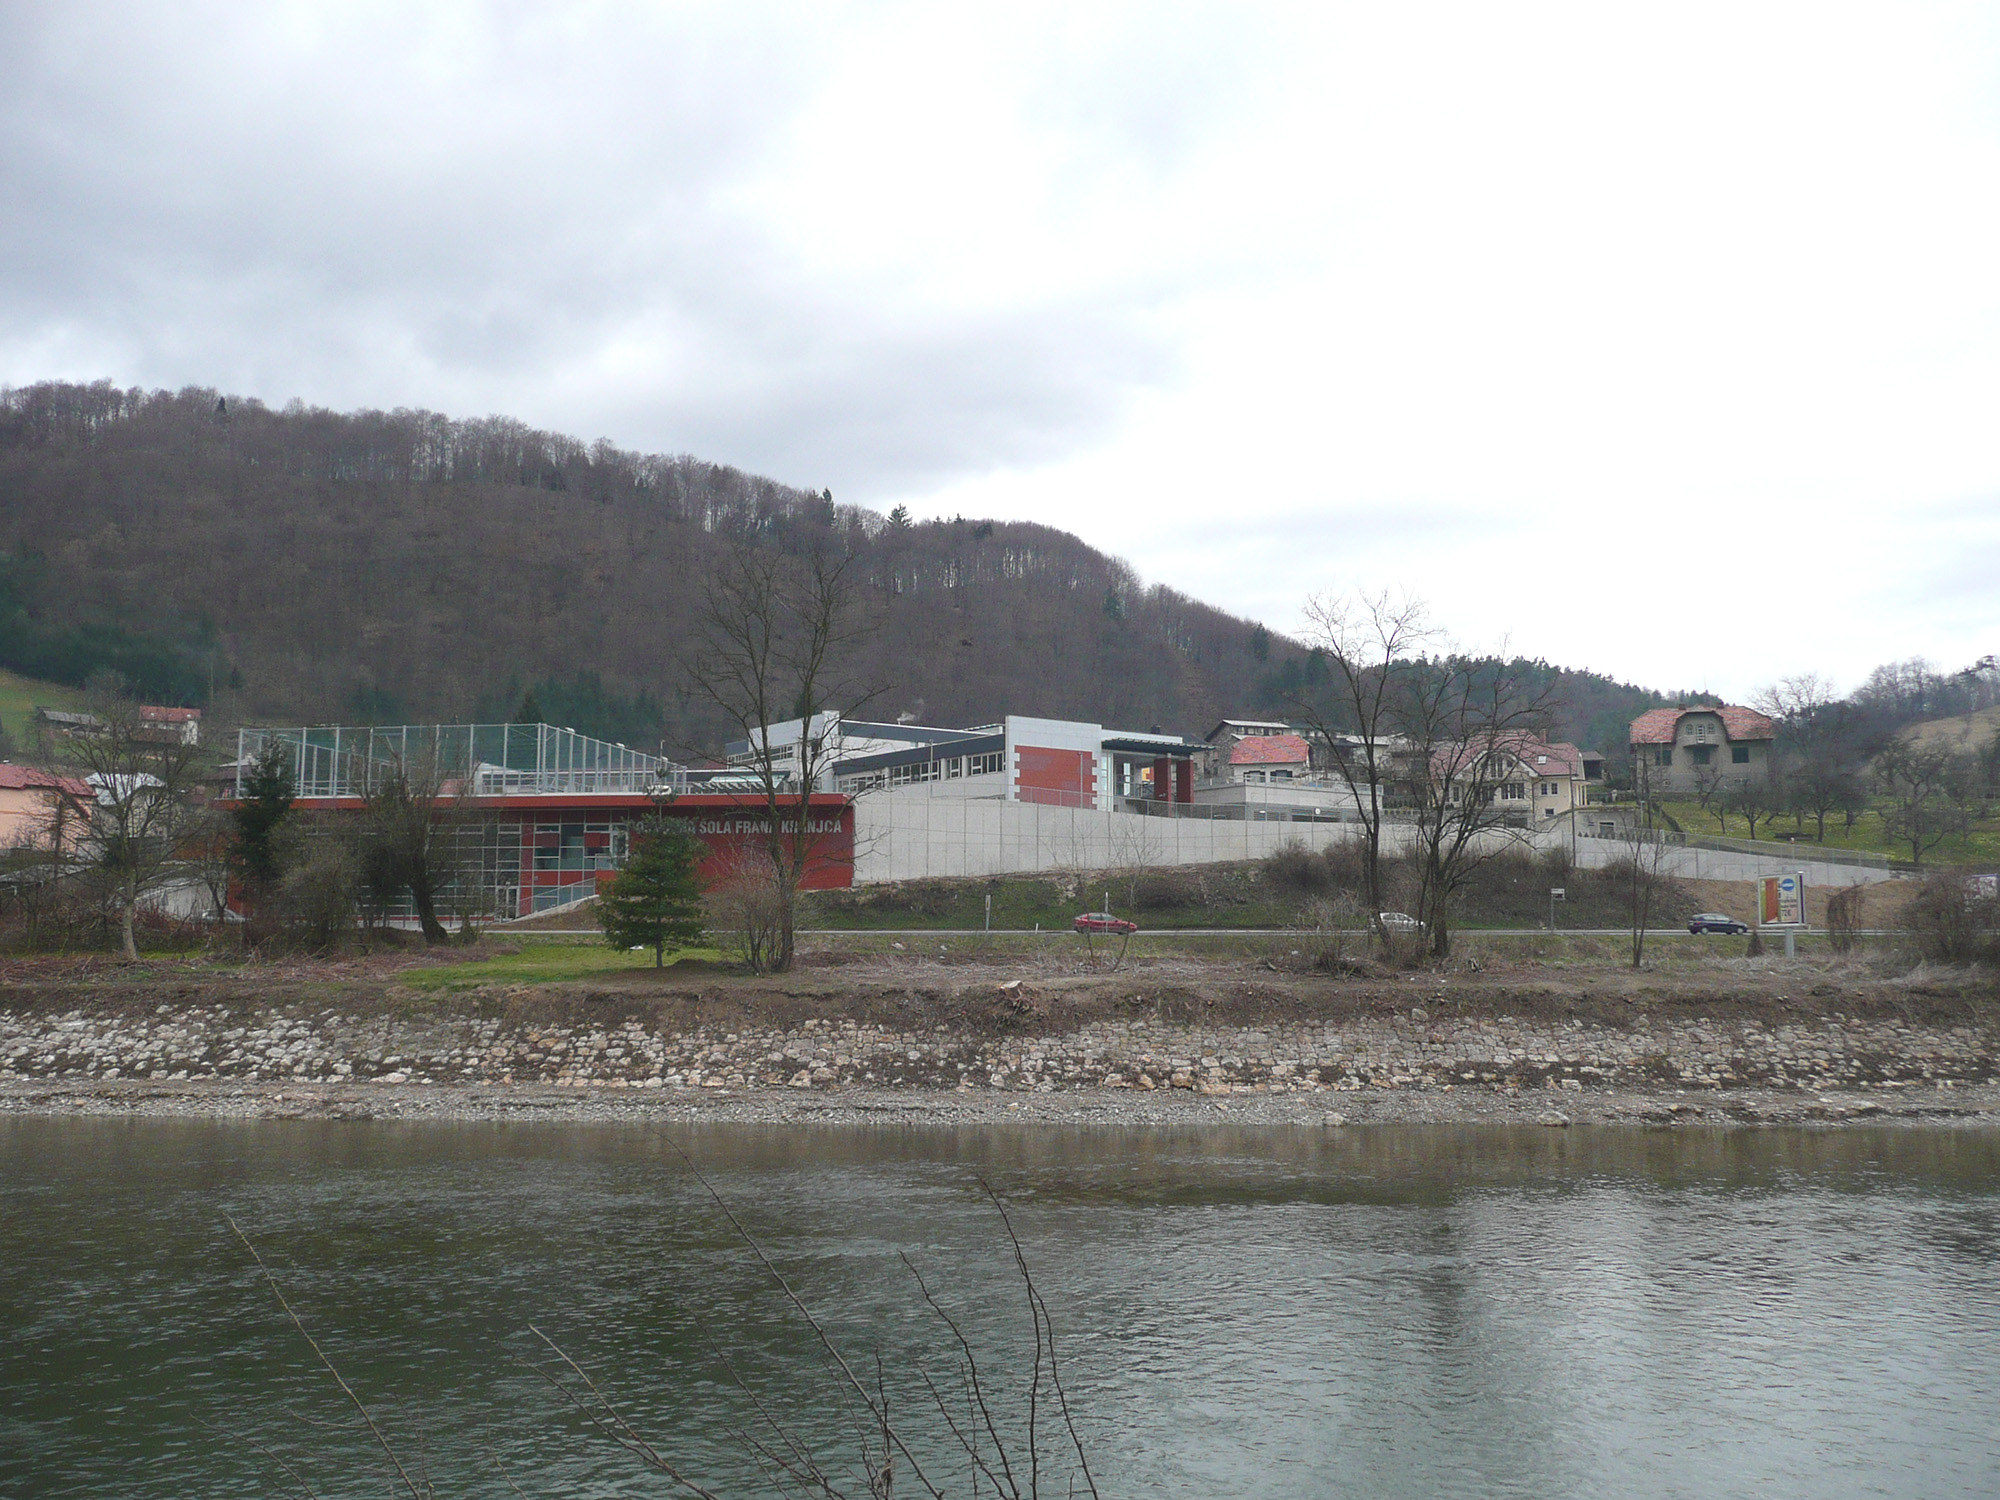 New primary school Polule in Celje